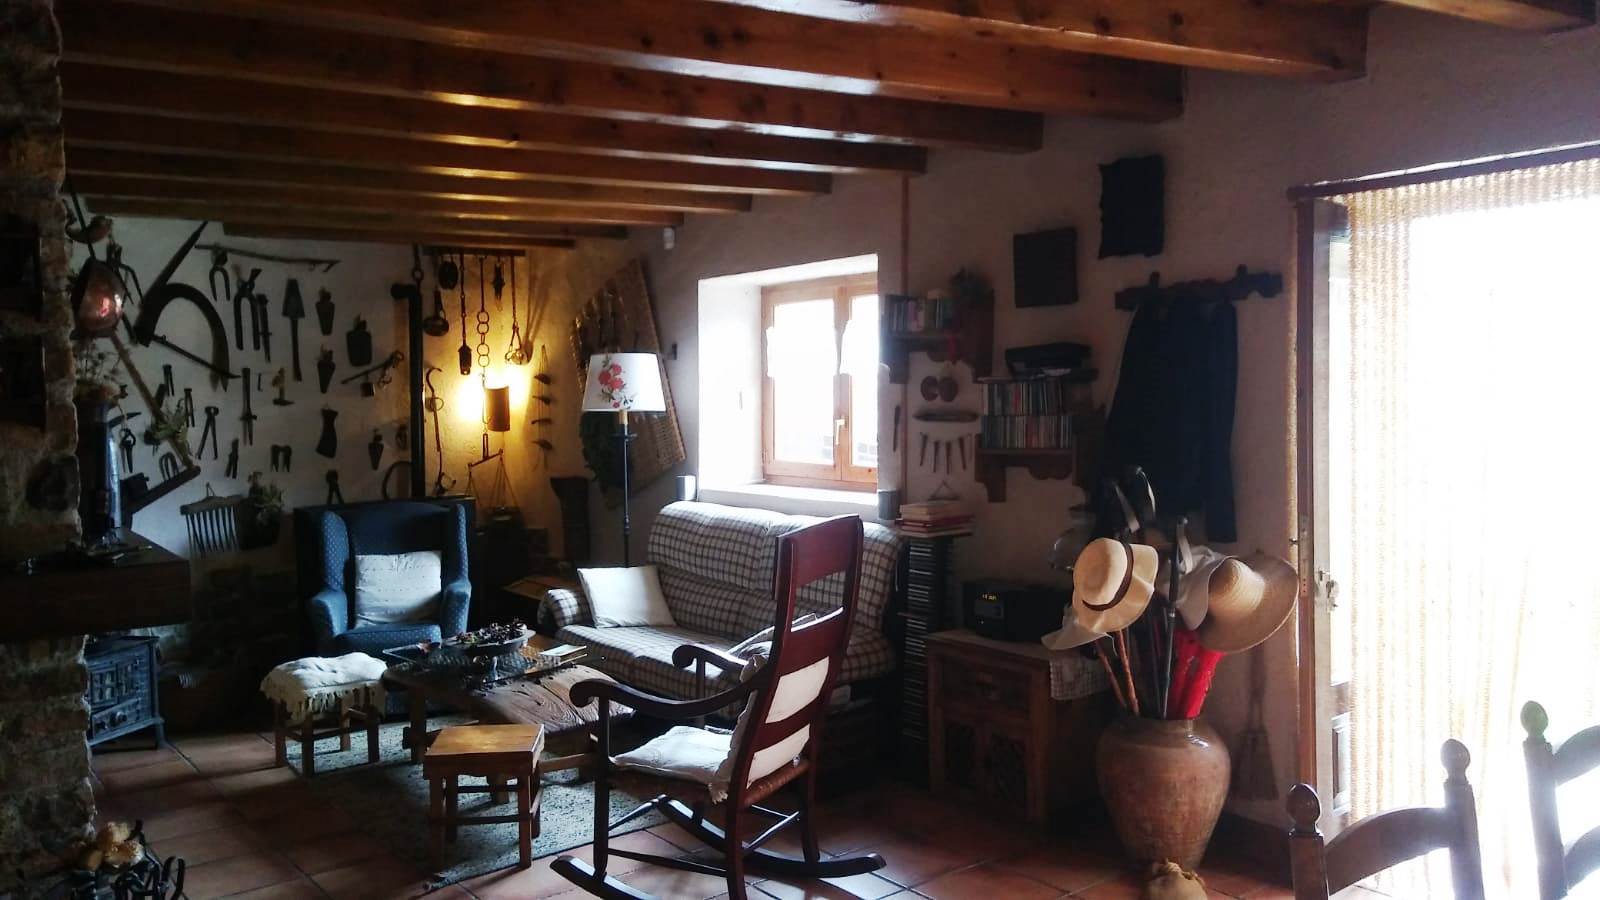 Casa con jardín en Montcortés de Pallars